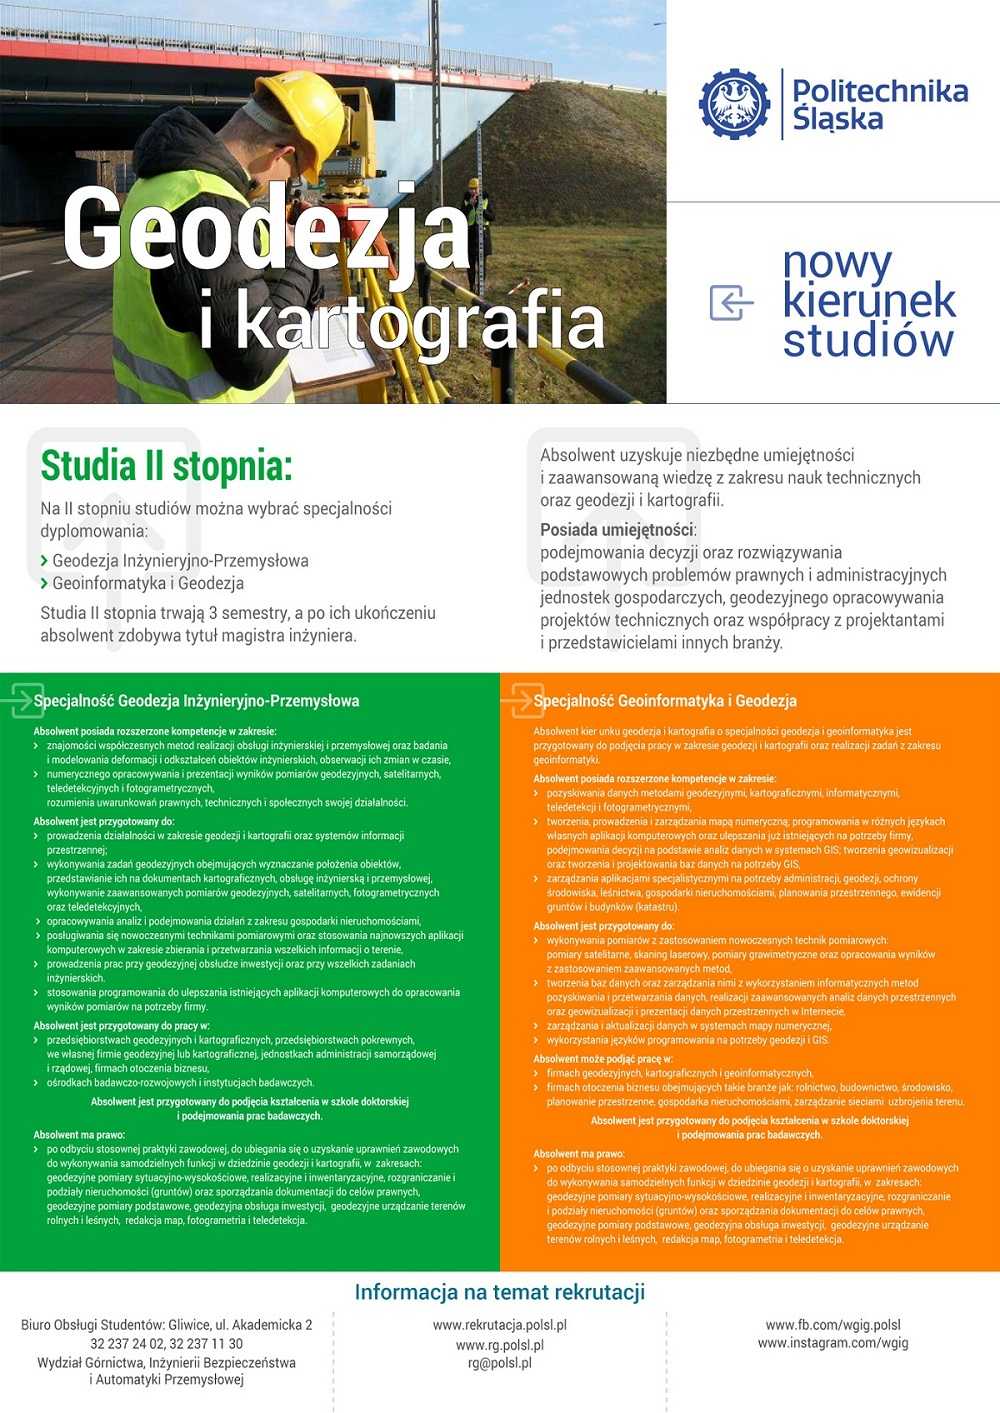 Geodezja i kartografia na Politechnice Śląskiej img